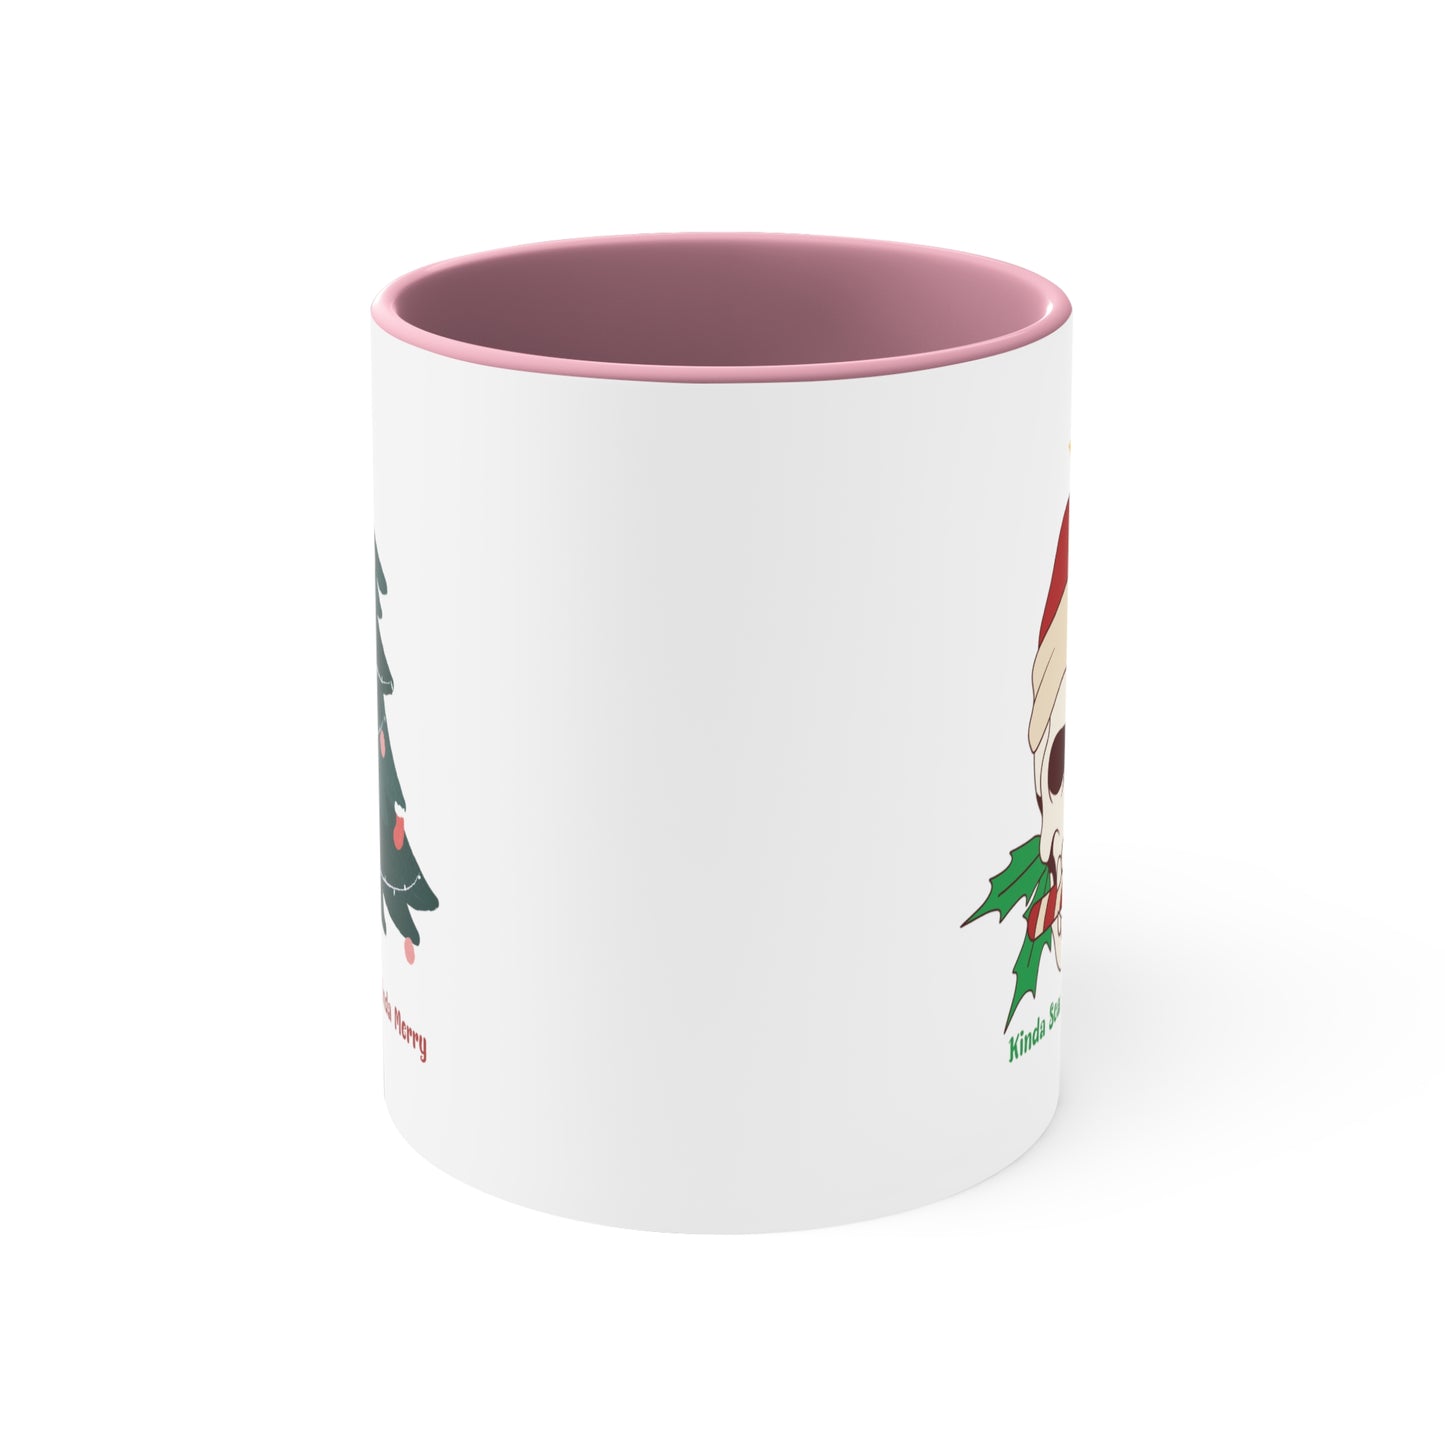 Kinda Scary Kindsa Merry Mug, Funny Christmas Mugt, Cute Spooky Season Mug, Custom Christmas Skeleton Mug, Accent Coffee Mug, 11oz, 4 colors